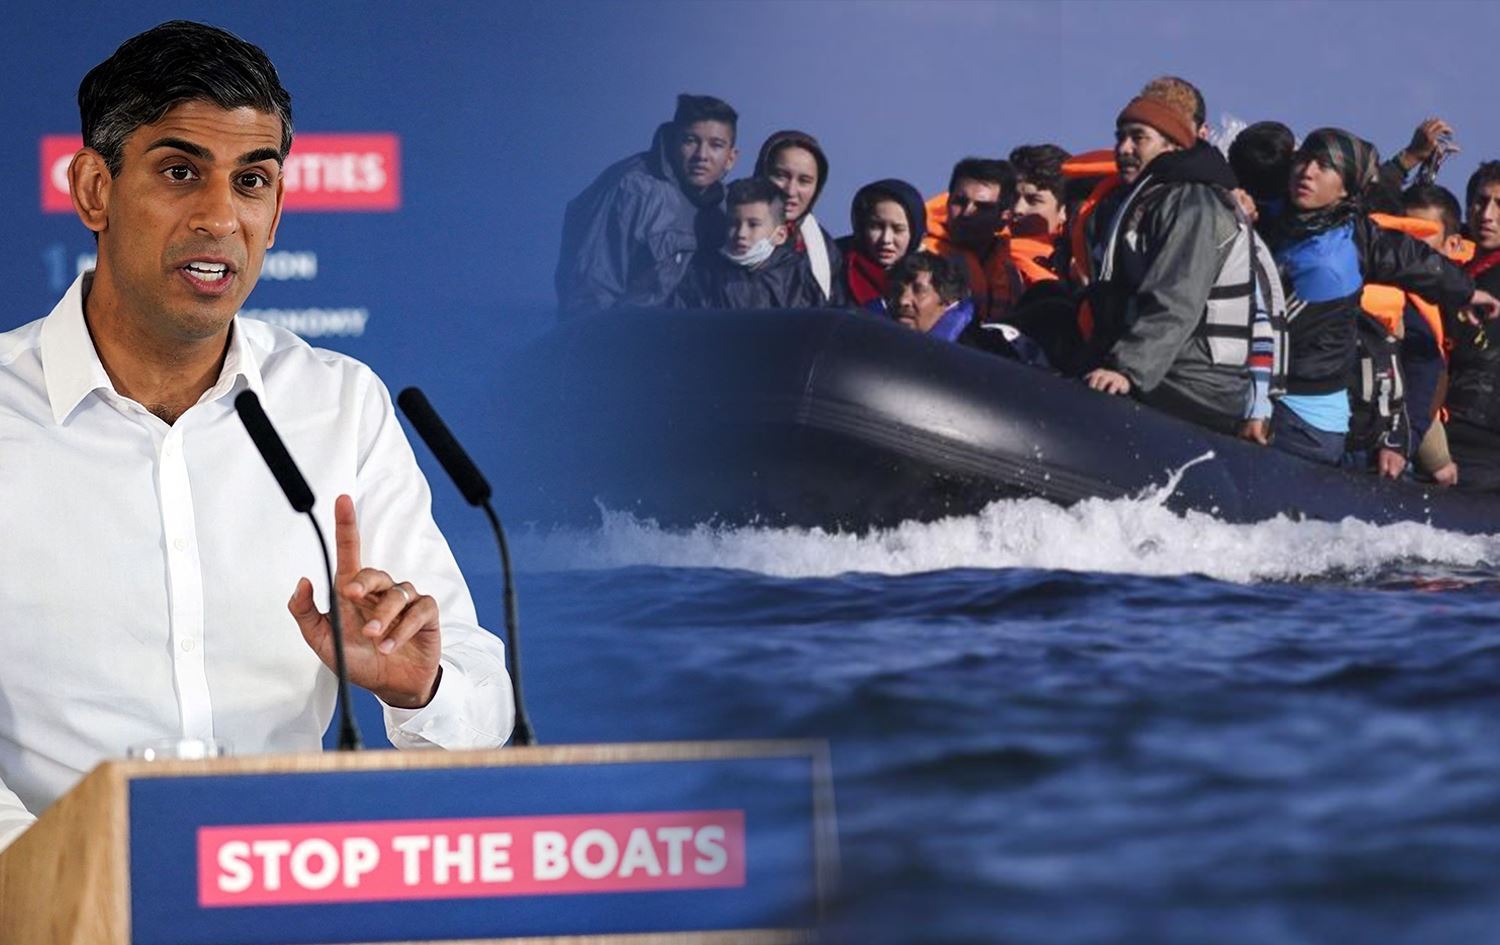 Göçmen Başbakan'dan göçmenlere ihanet!